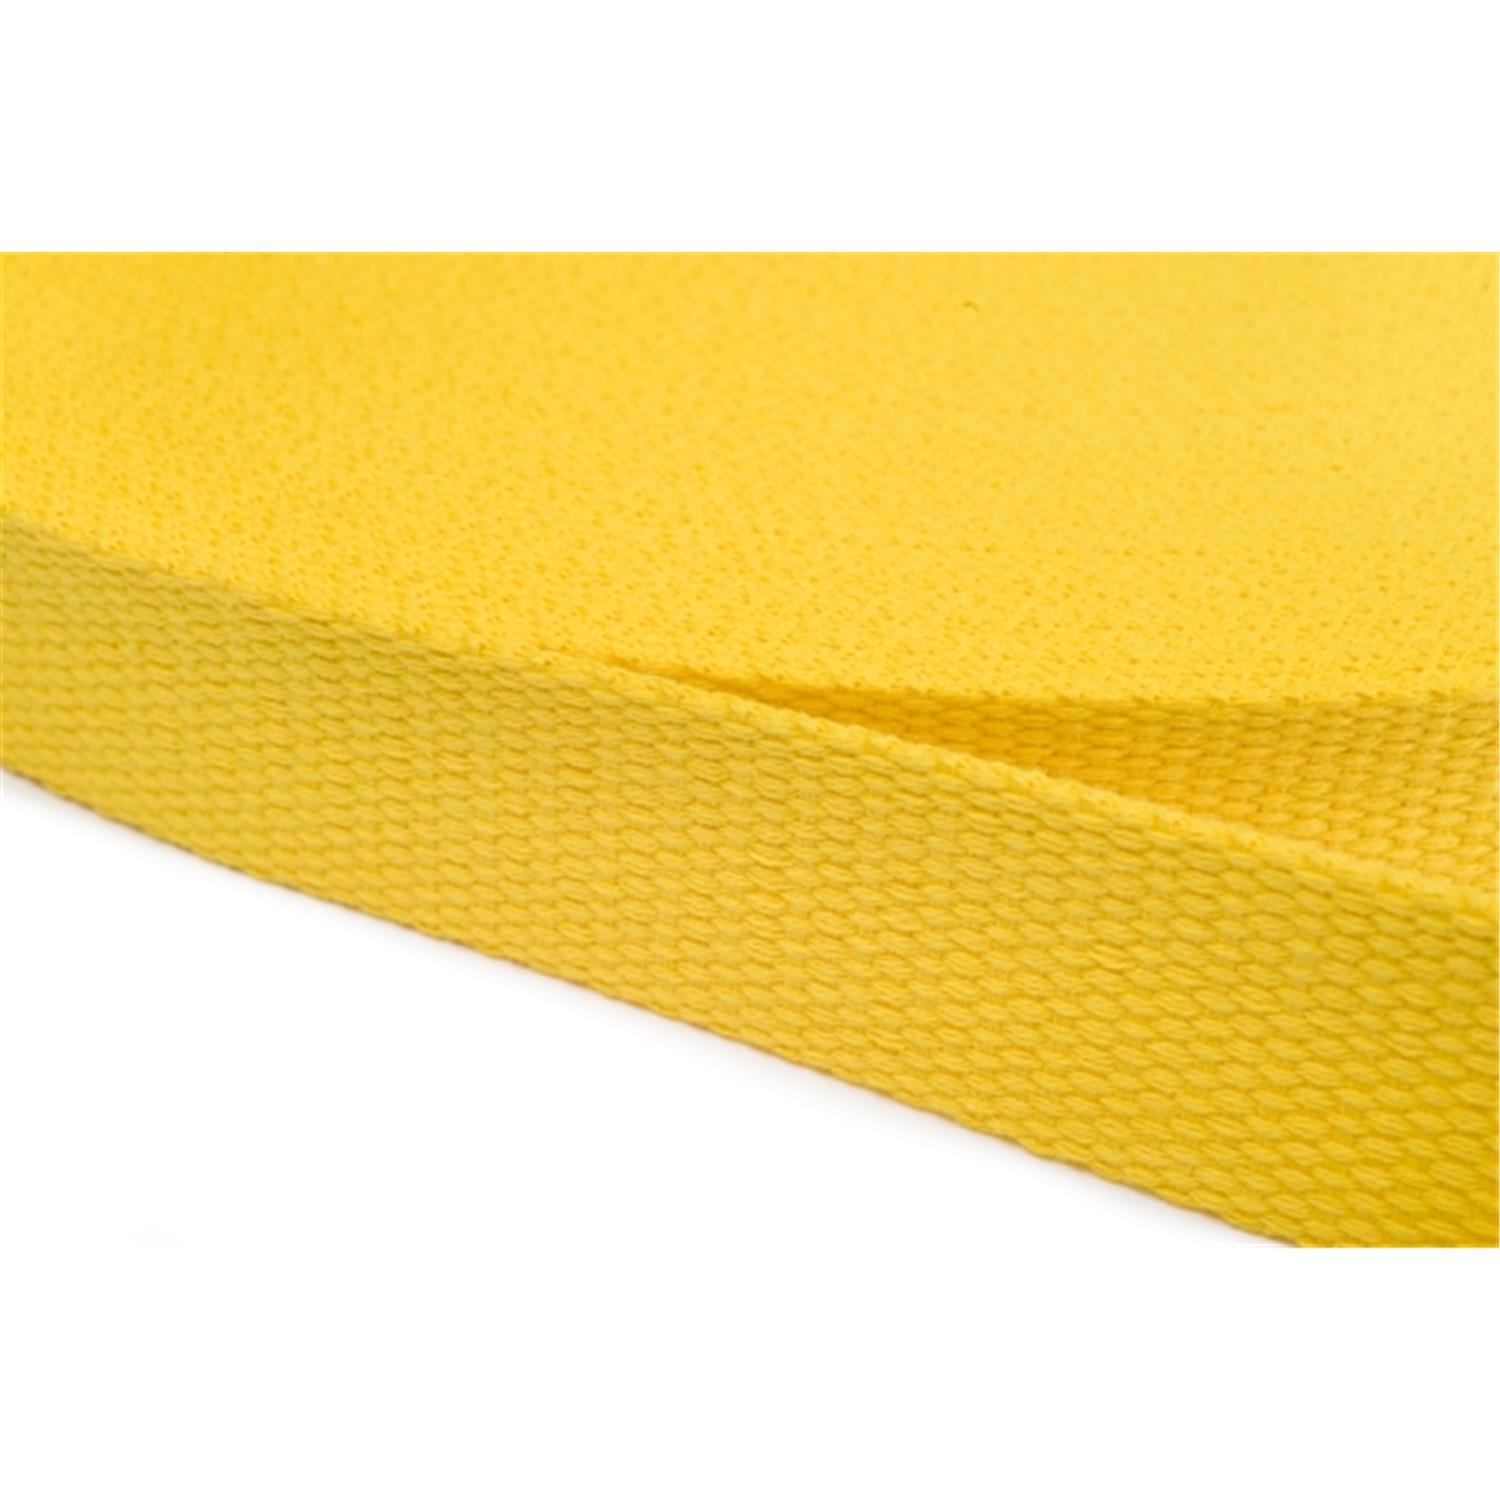 Gurtband aus Baumwolle 15mm in 20 Farben 05 - gelb 6 Meter